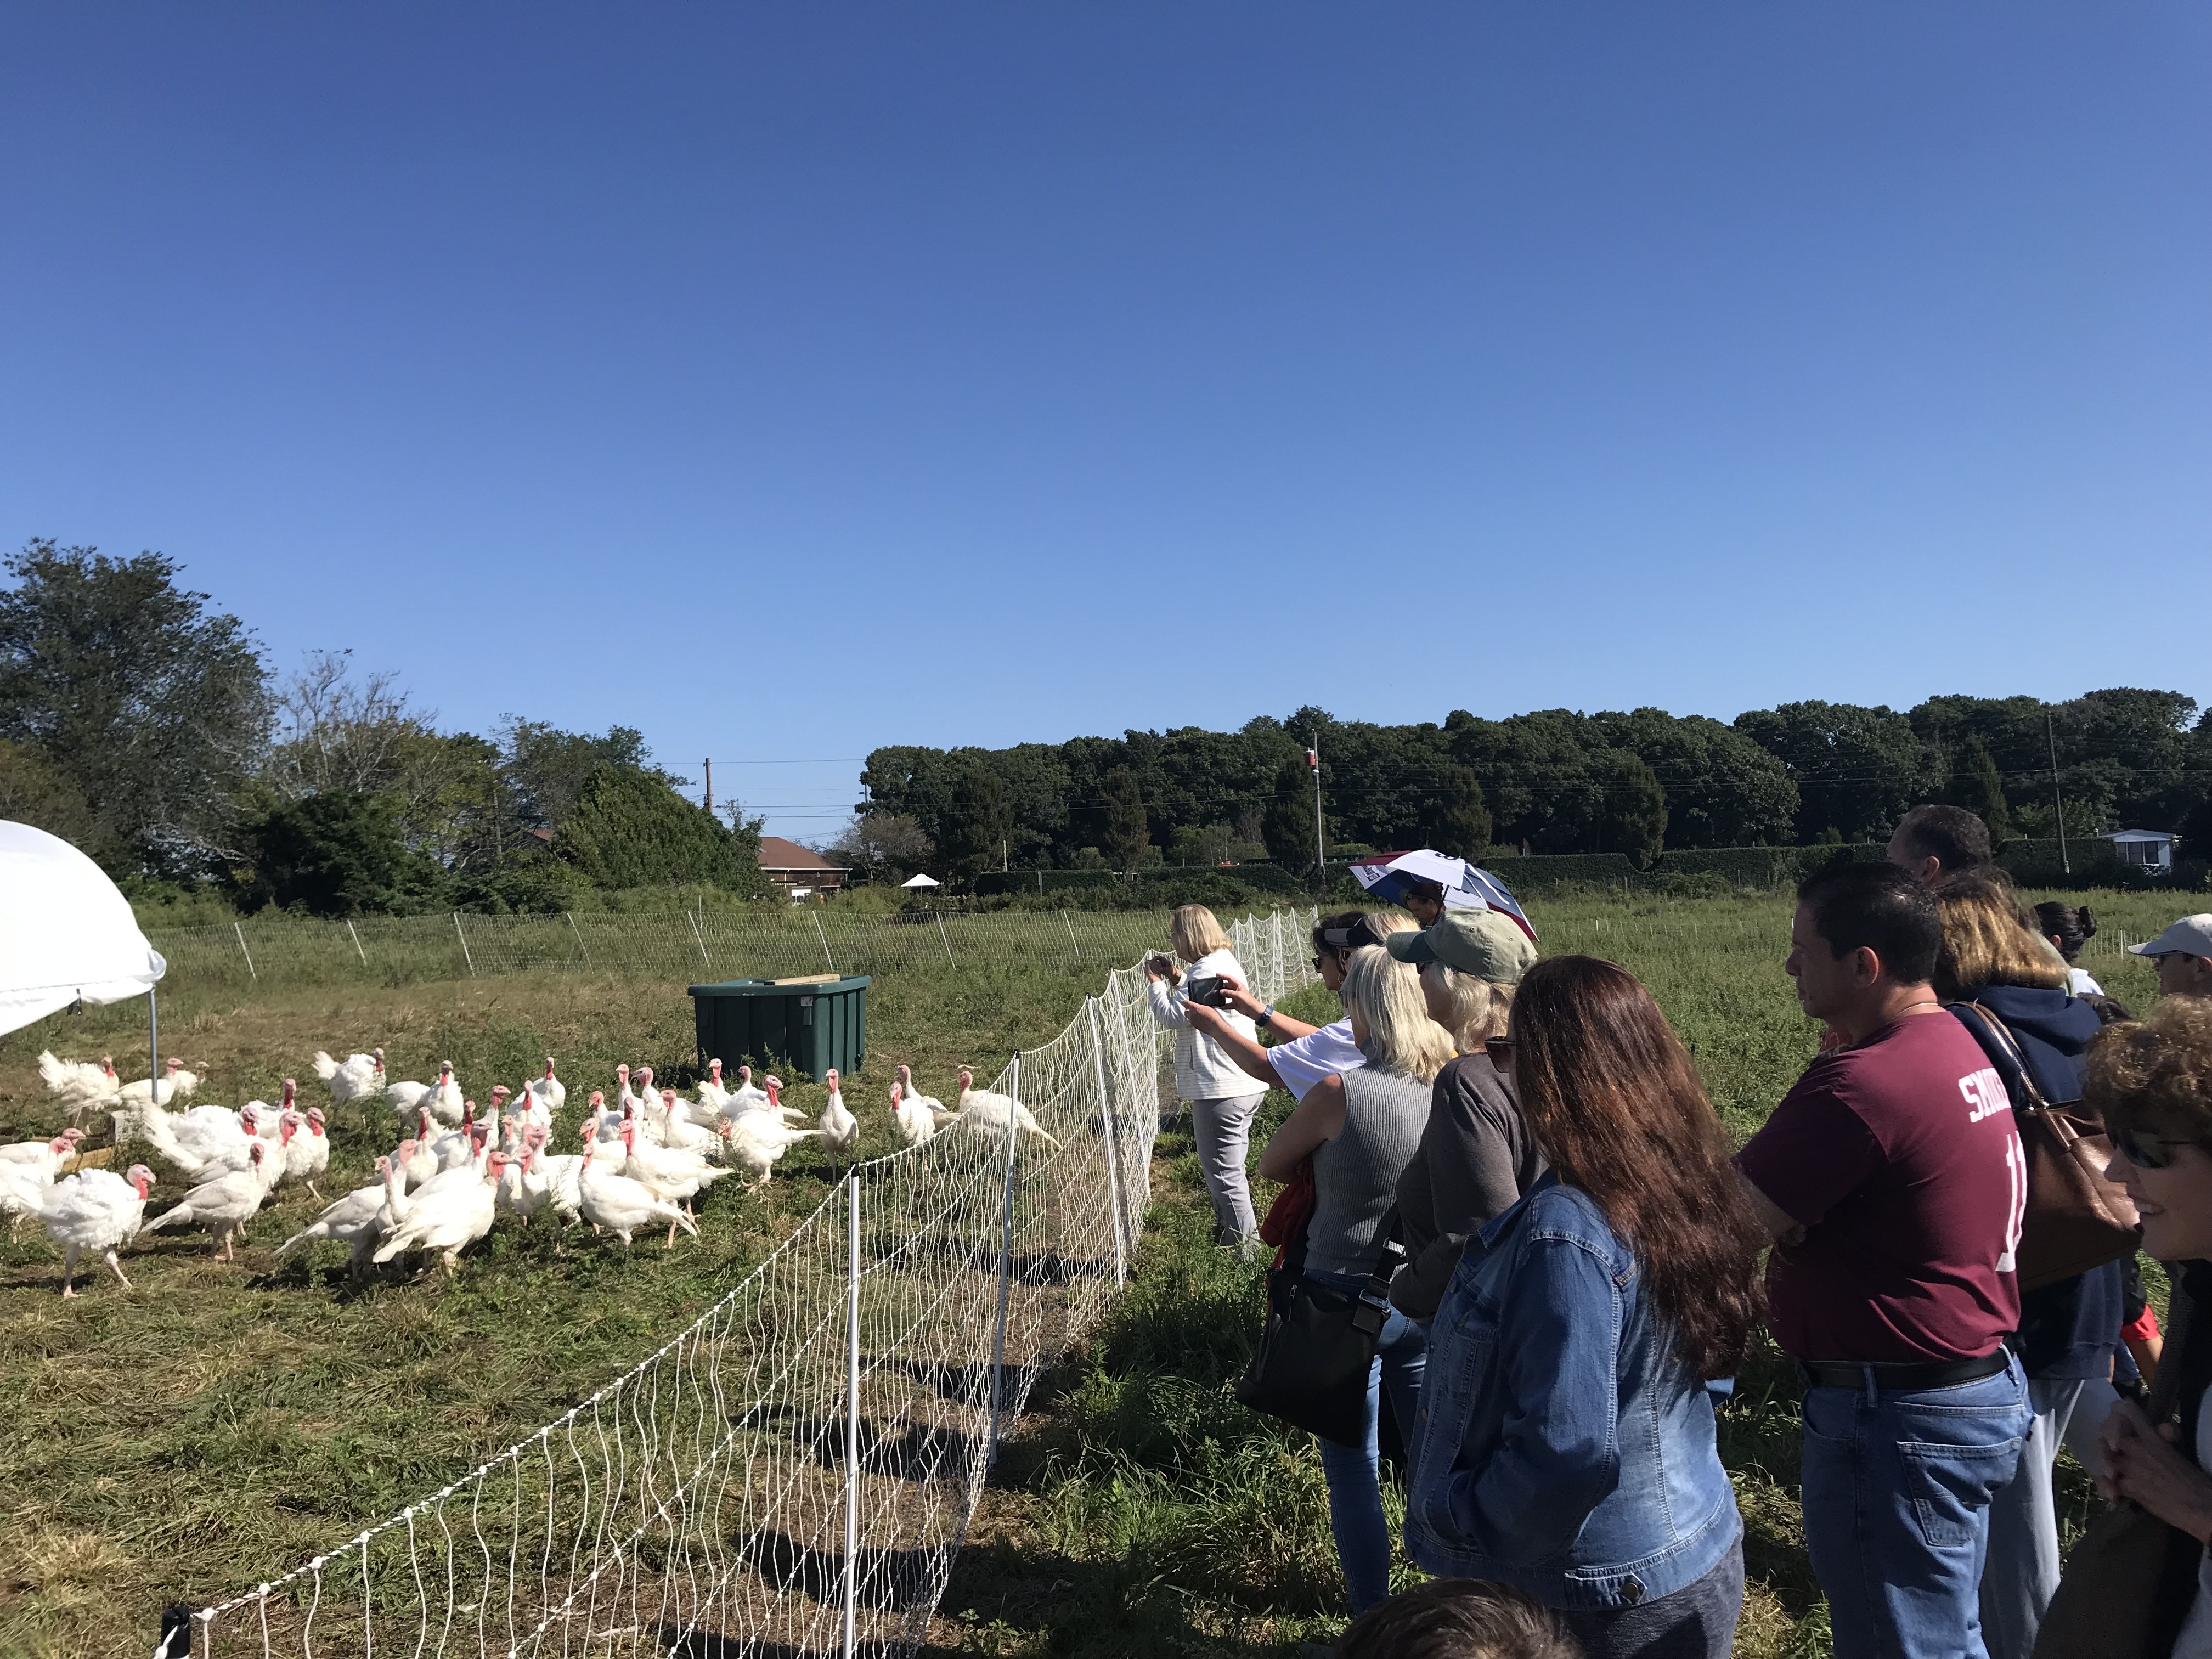 Turkeys at 8 Hands Farm